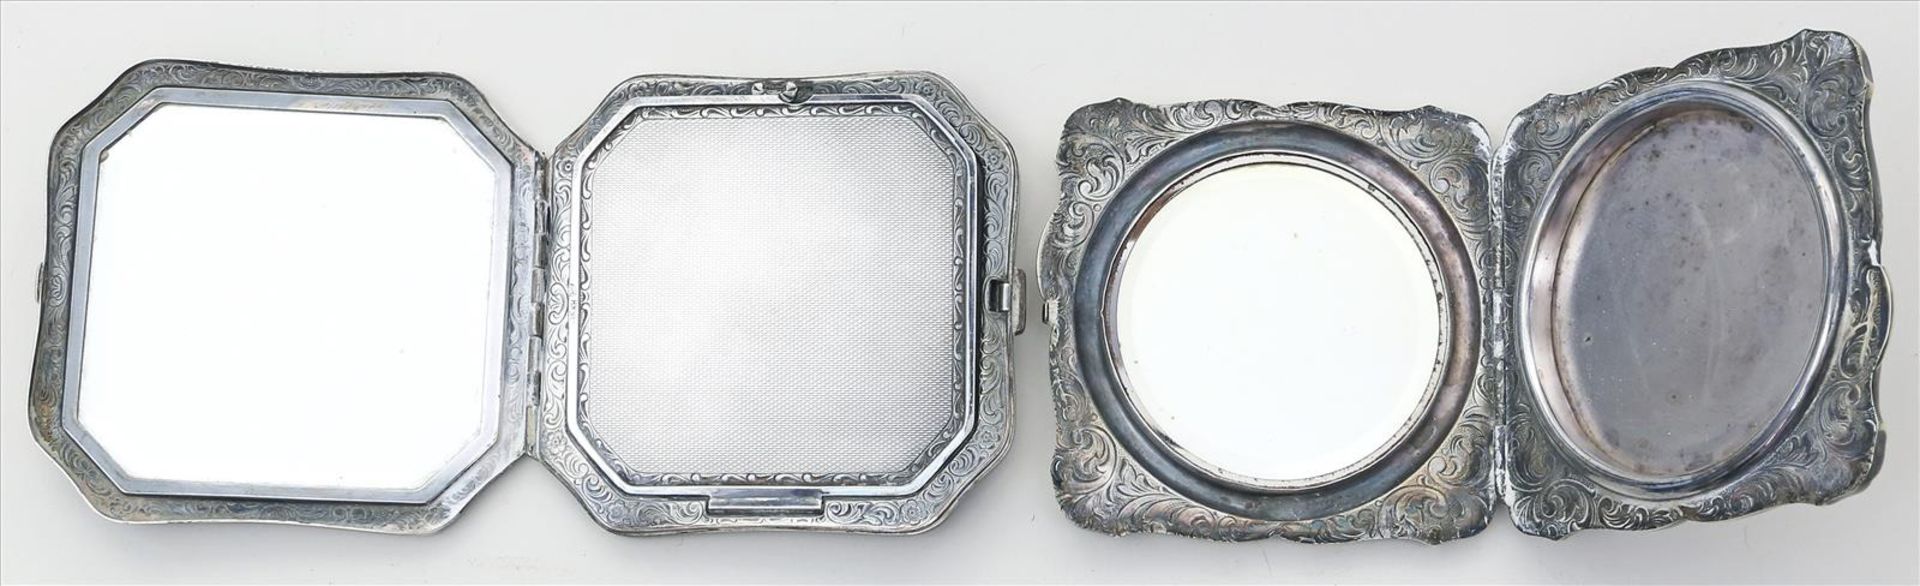 2 Puderdosen.Silber (1x 835/000), brutto 213 g. Guillochiertes bzw. ziseliertes Dekor. Innen je - Image 2 of 2